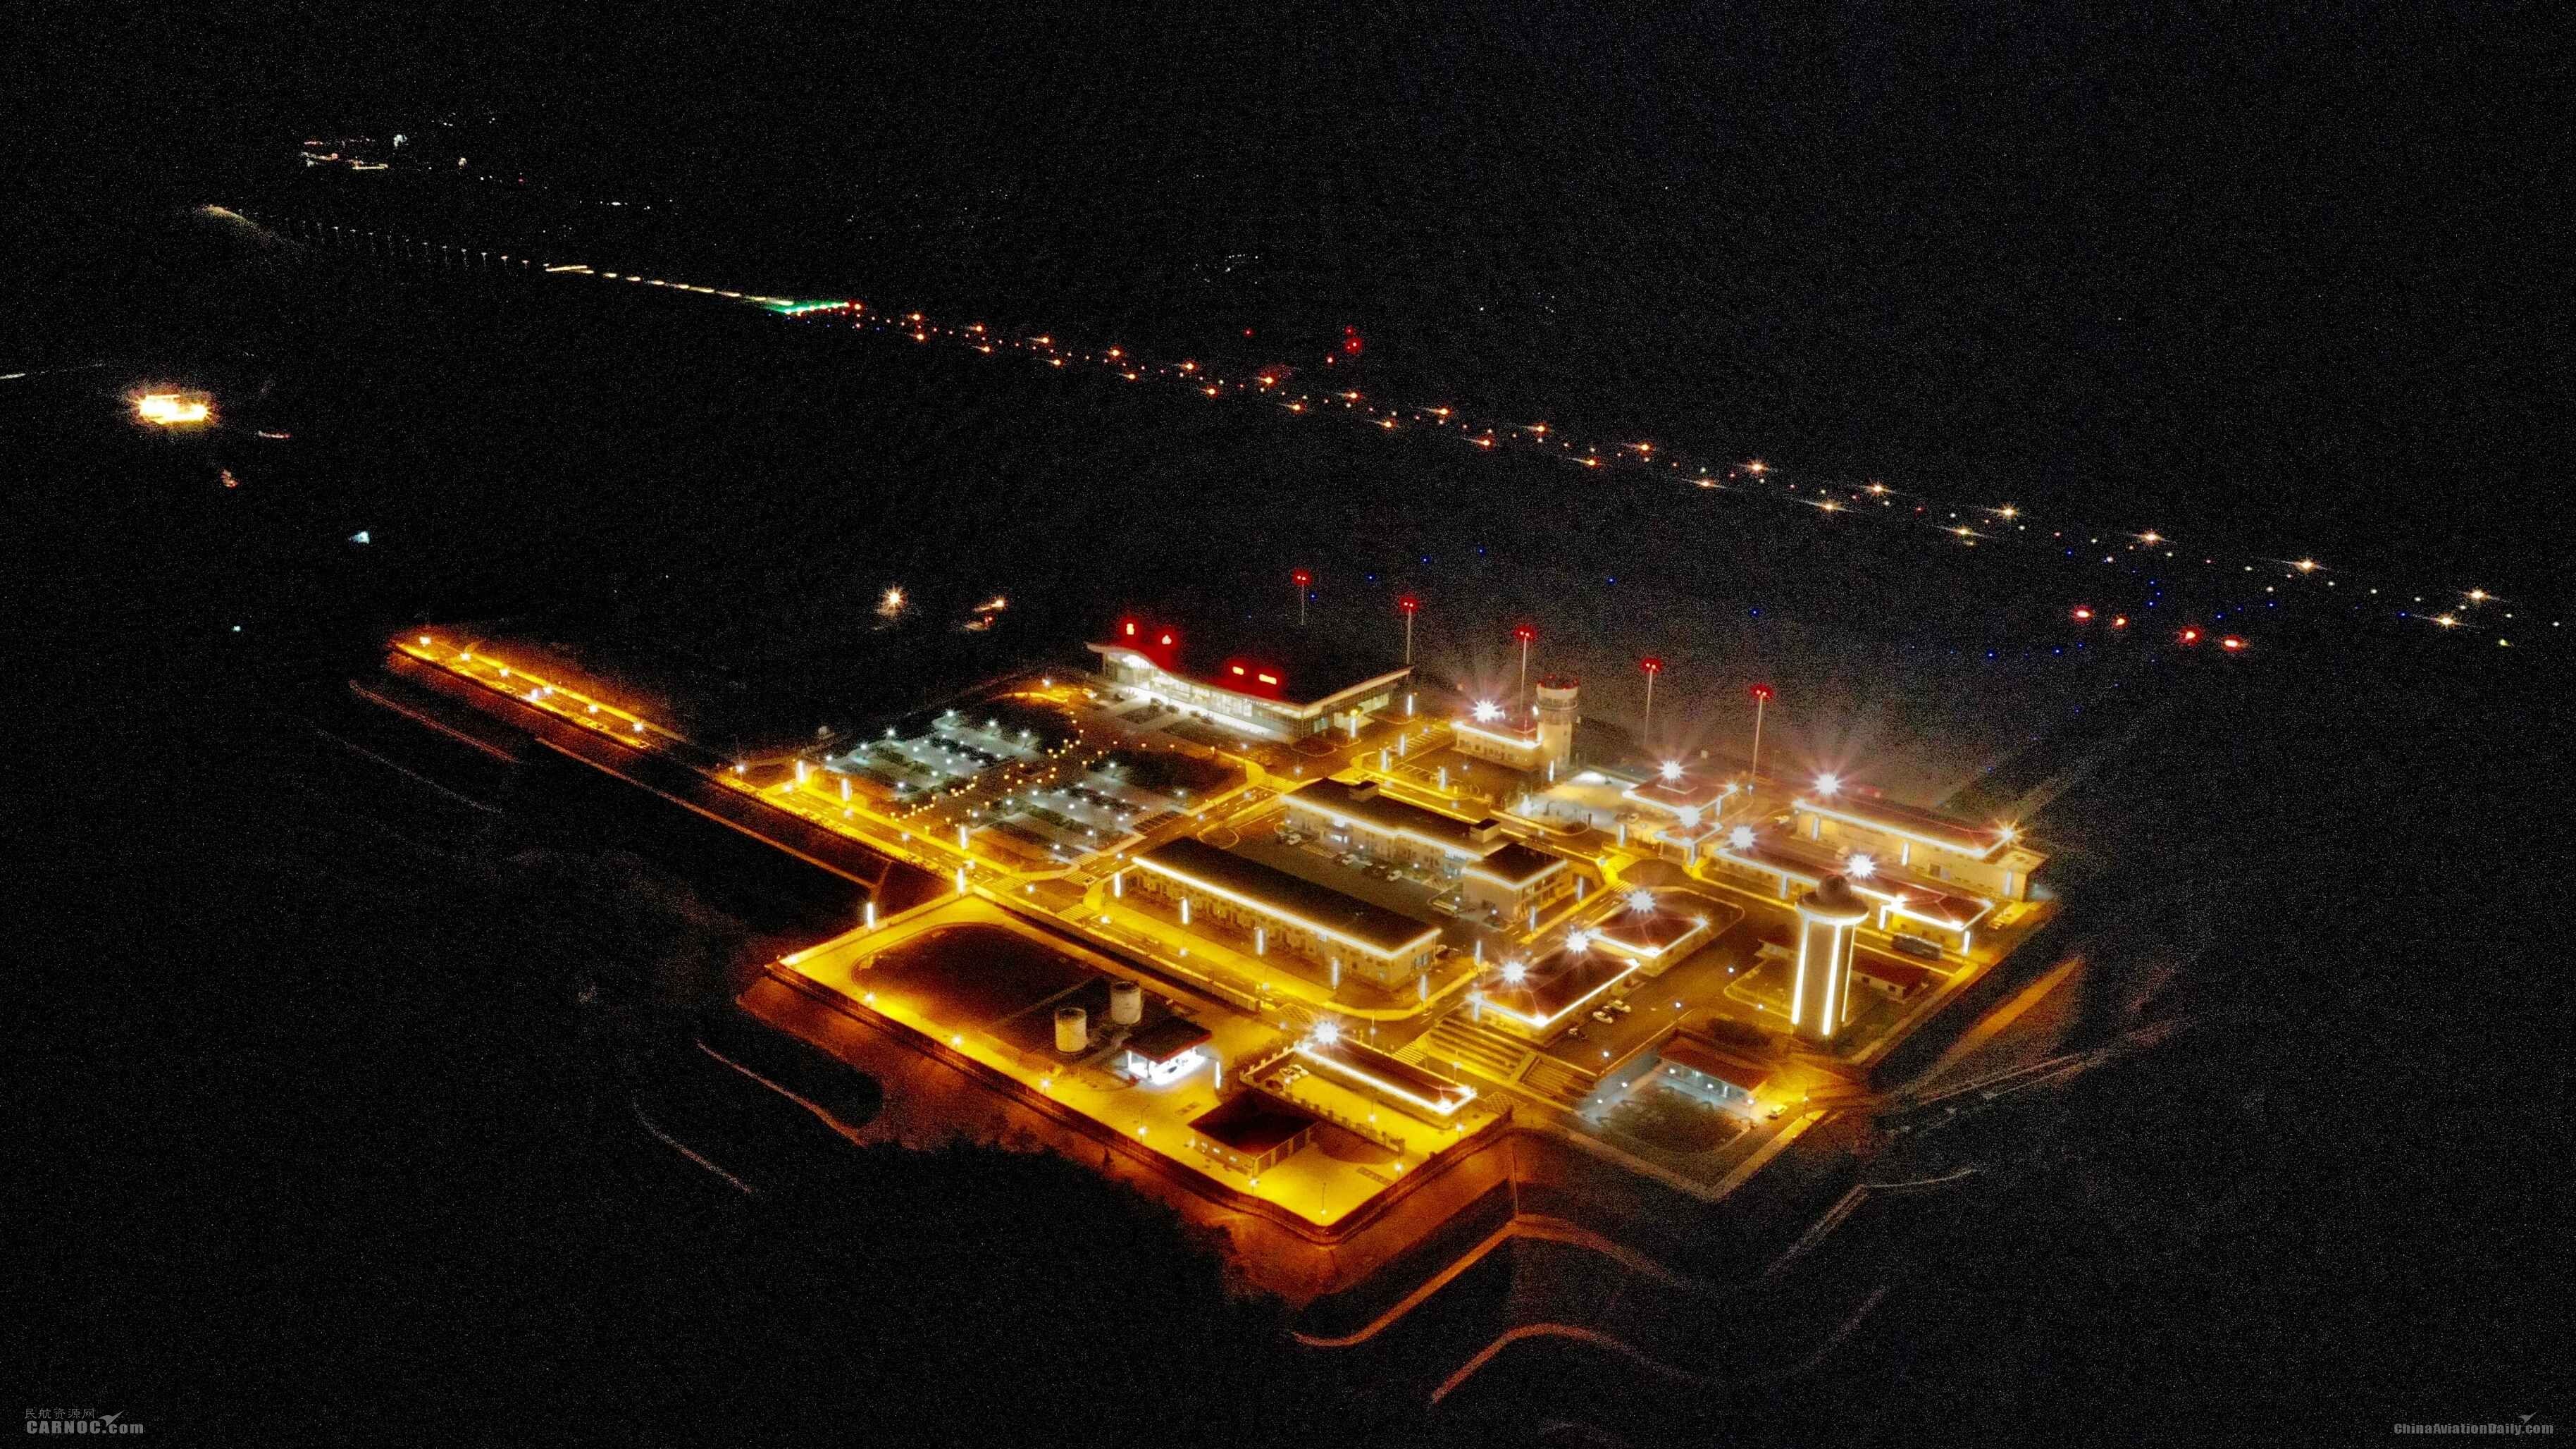 巫山机场建设工程正式通过行业验收
机场供图